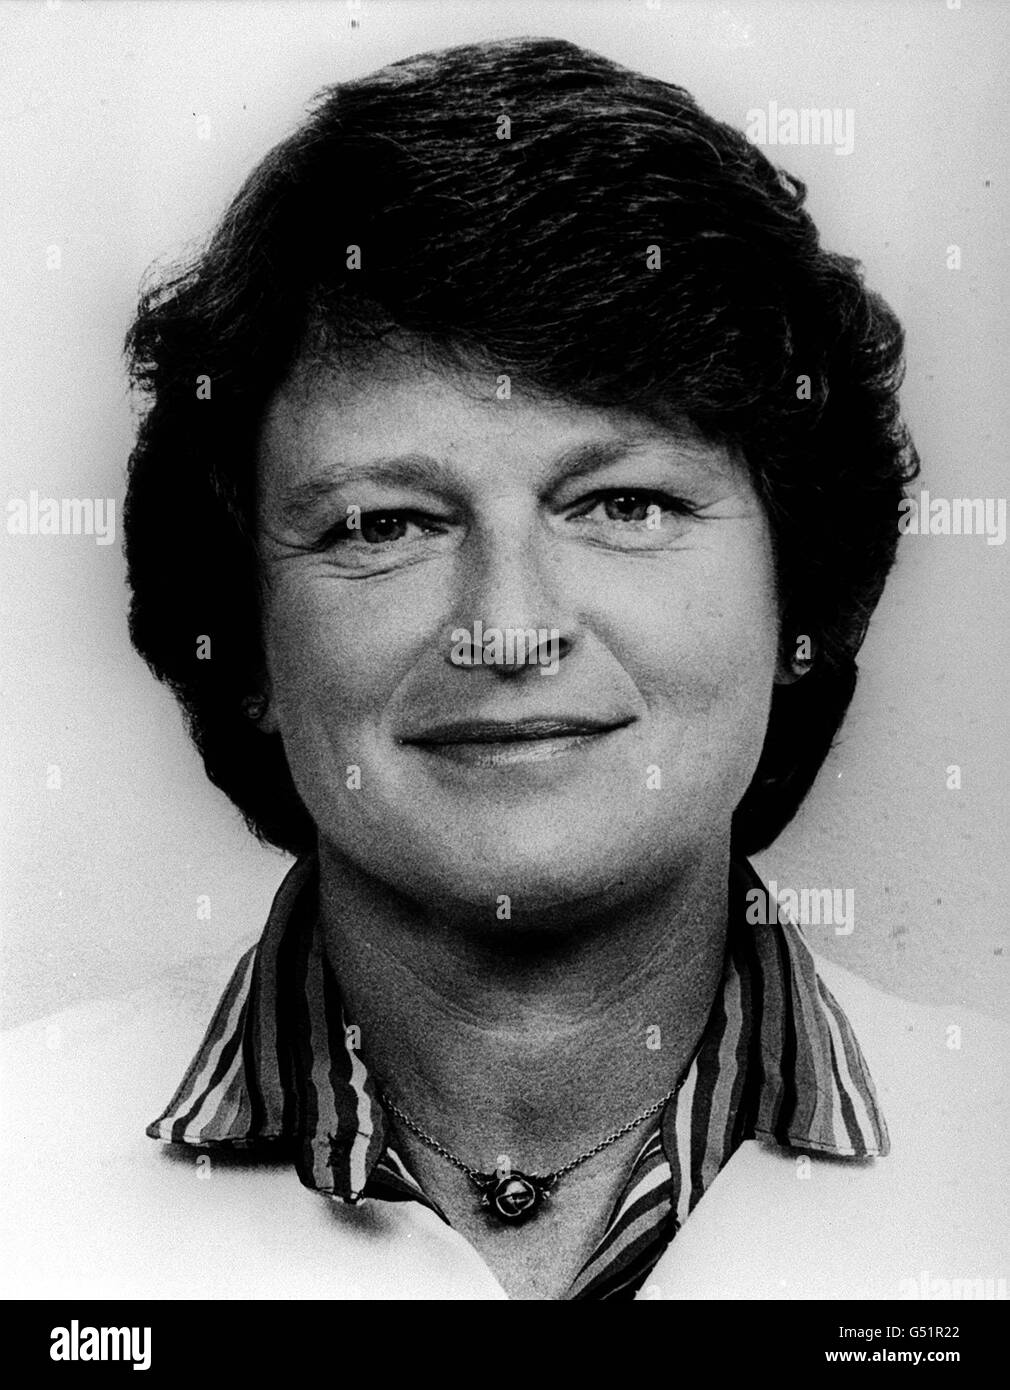 GRO Harlem Brundtland, primo ministro del lavoro norvegese del 47, che nel 1981 divenne la prima Premier nordica femminile. * nel maggio 1986, a seguito di un voto di non fiducia del parlamento contro la coalizione di centro destra sotto il Premier conservatore Kare Willoch, Brundtland ha riunito il suo secondo gabinetto Labour paty in cinque anni. Foto Stock